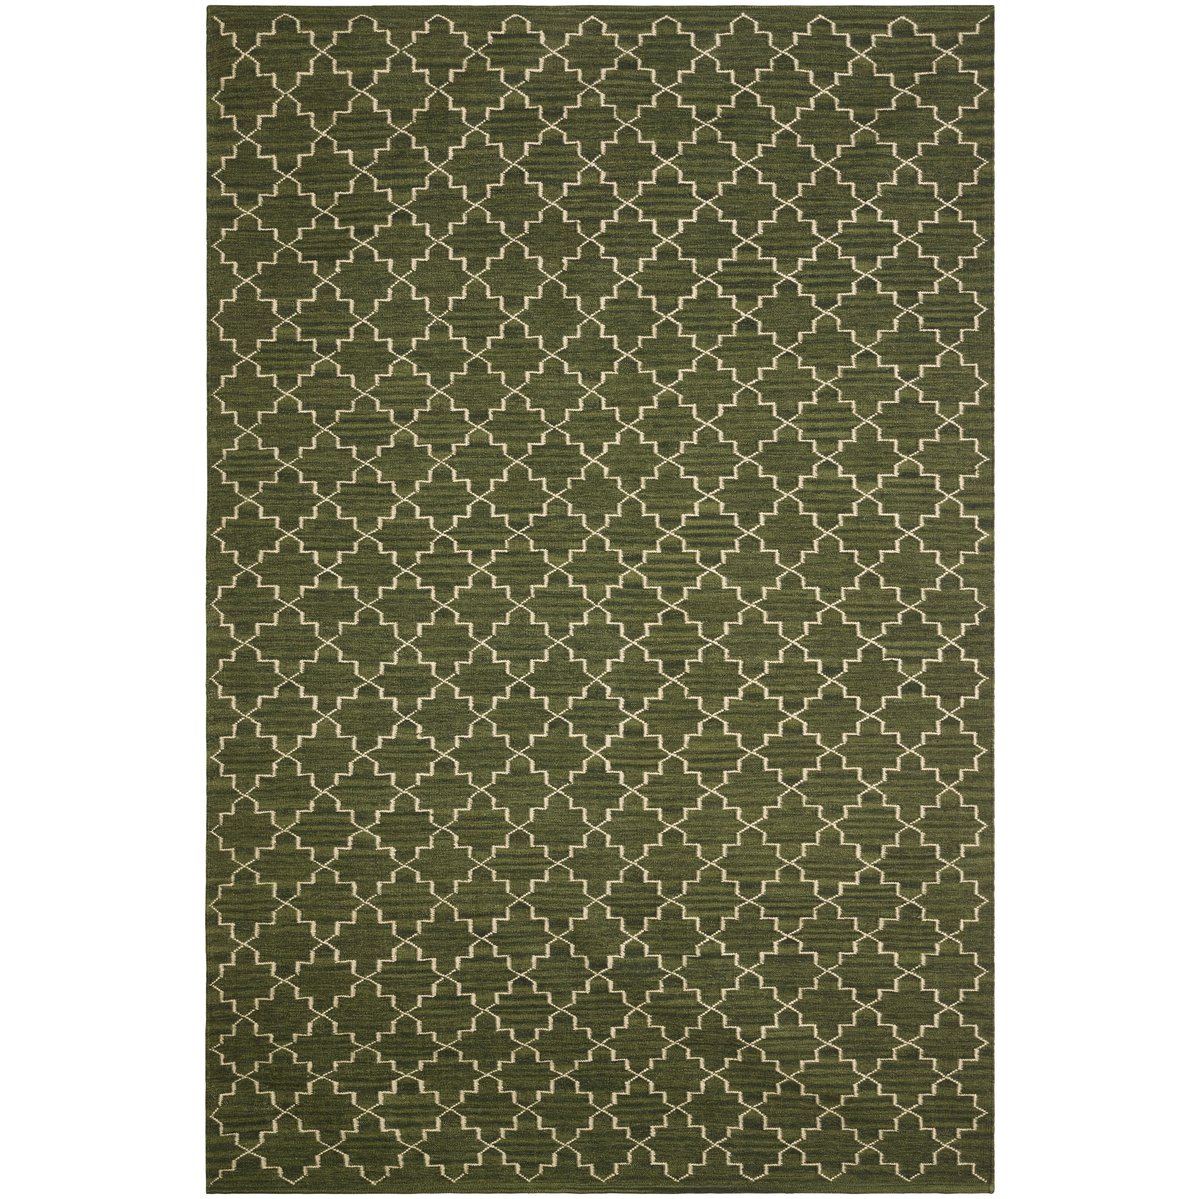 Chhatwal & Jonsson New Geometric vloerkleed 234x323 cm Green melange-off white